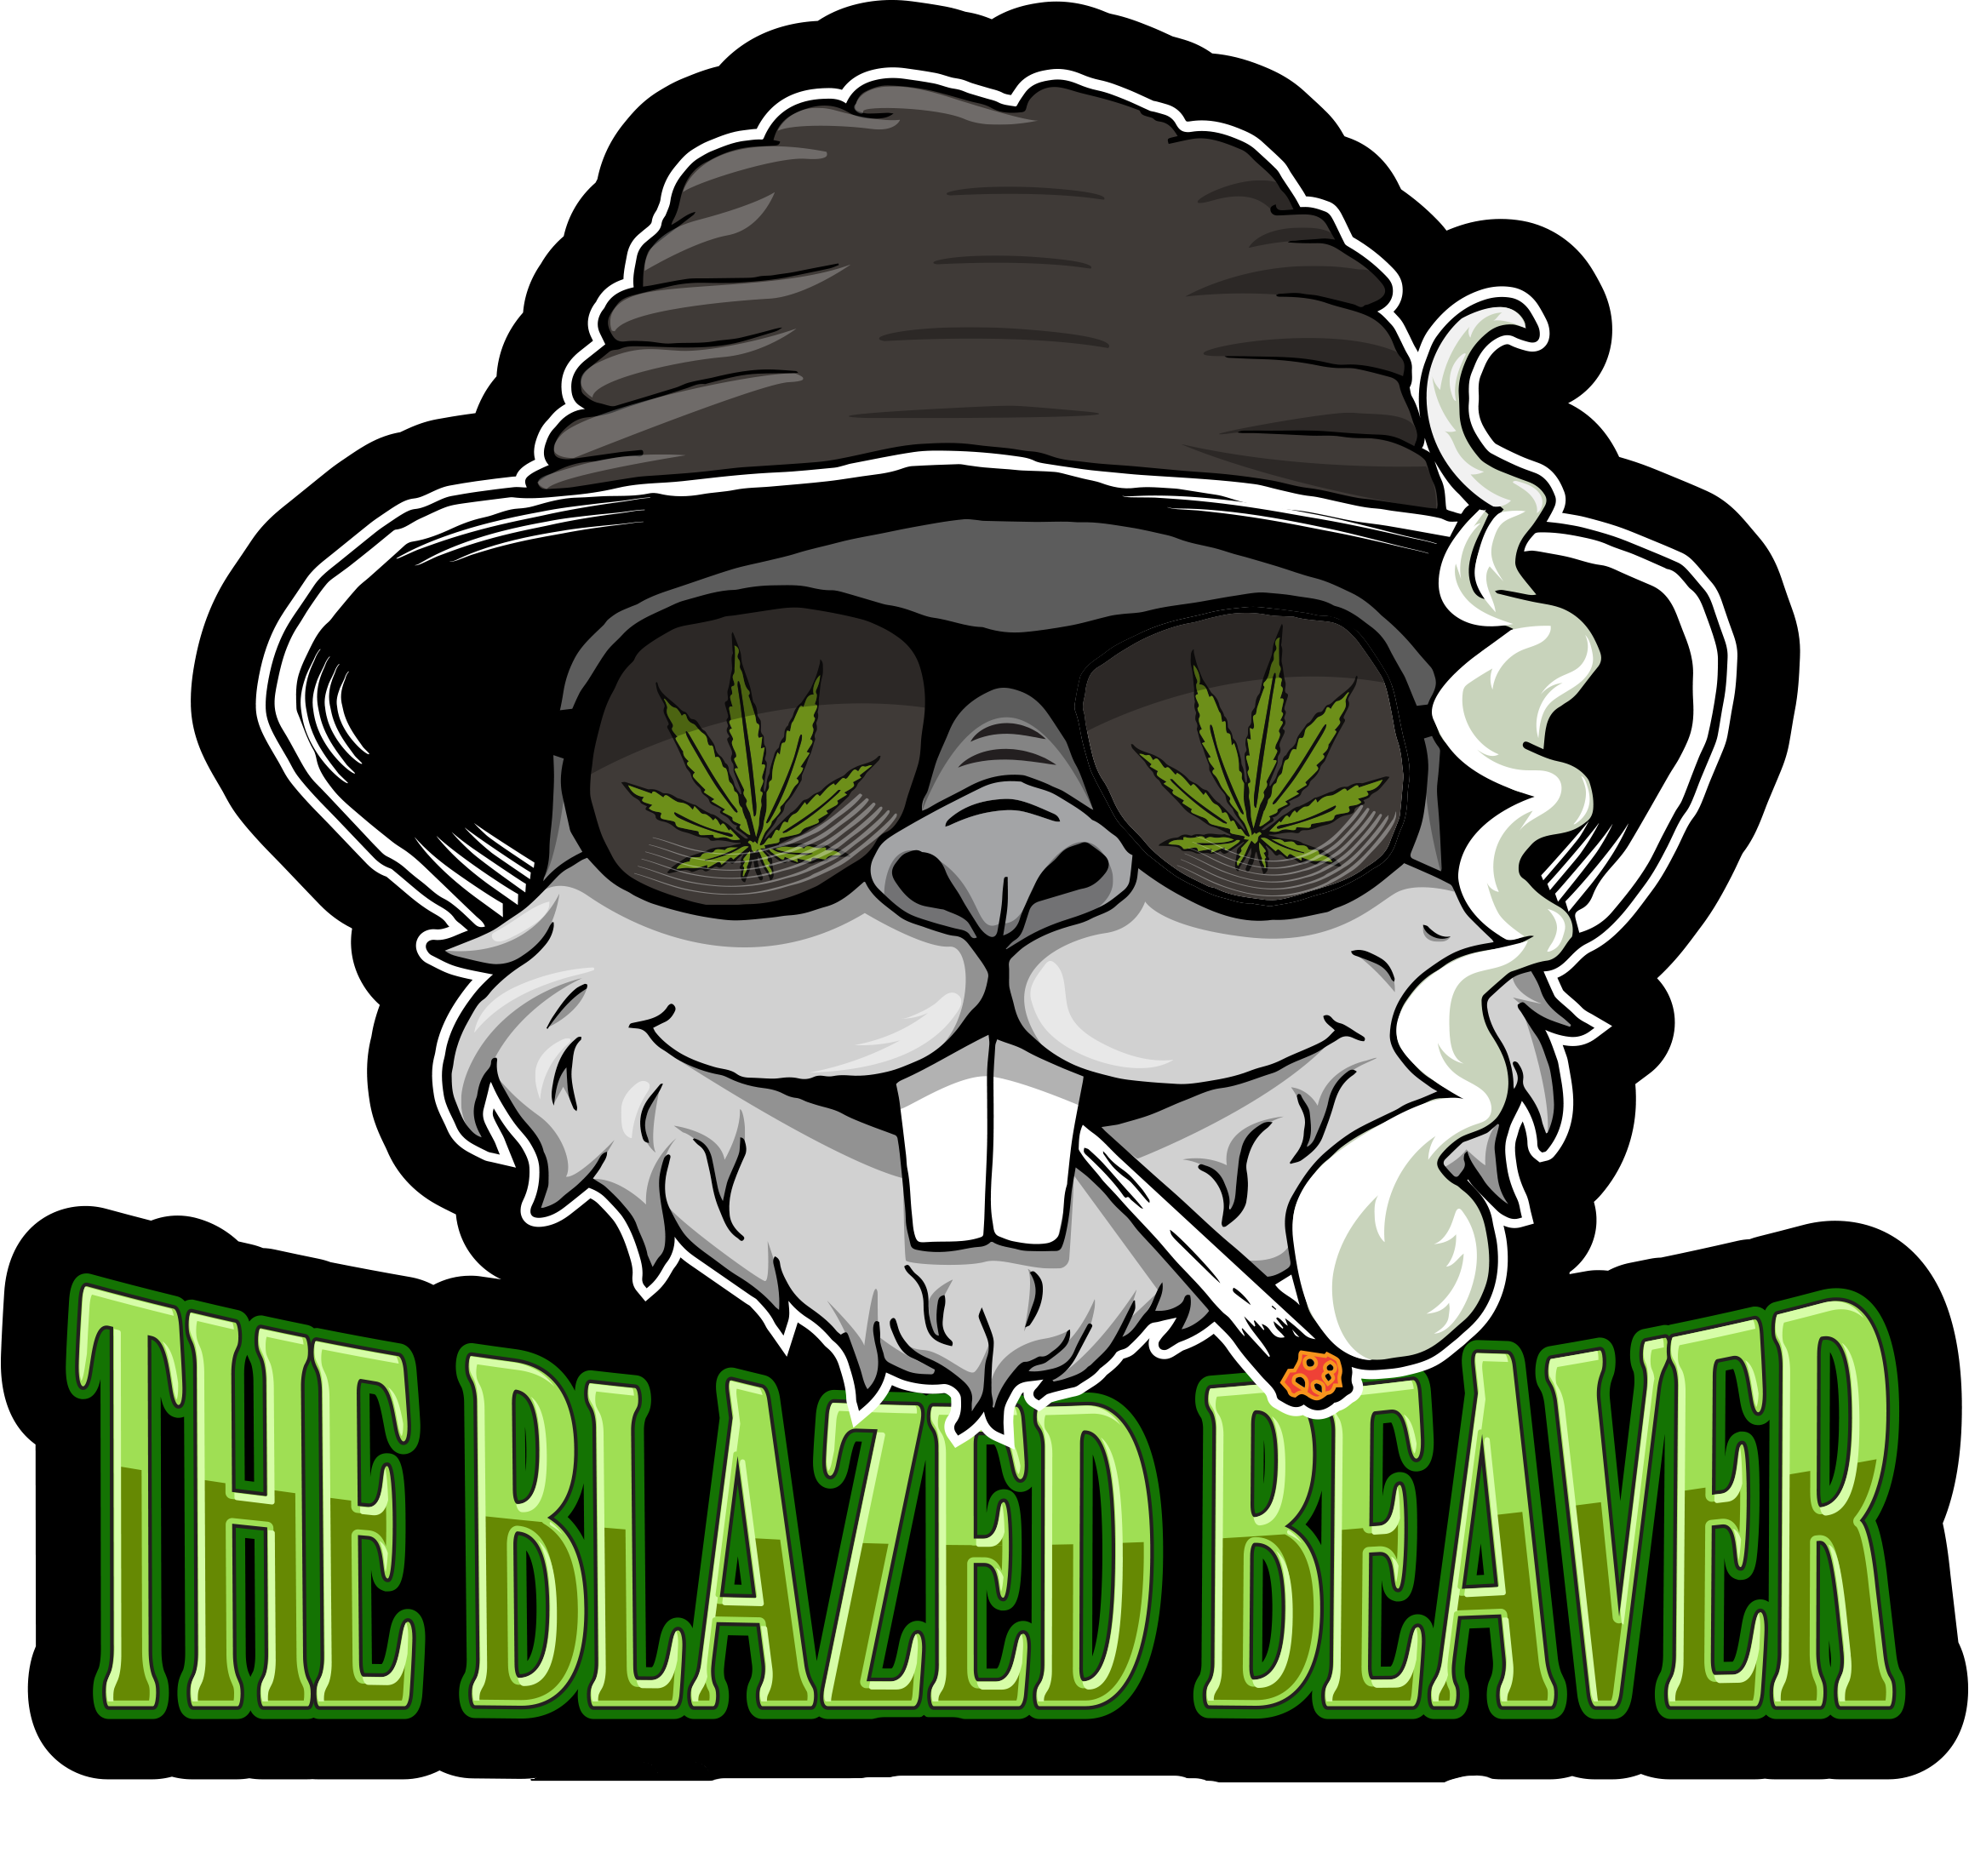 The Blazed Beaver Avatar